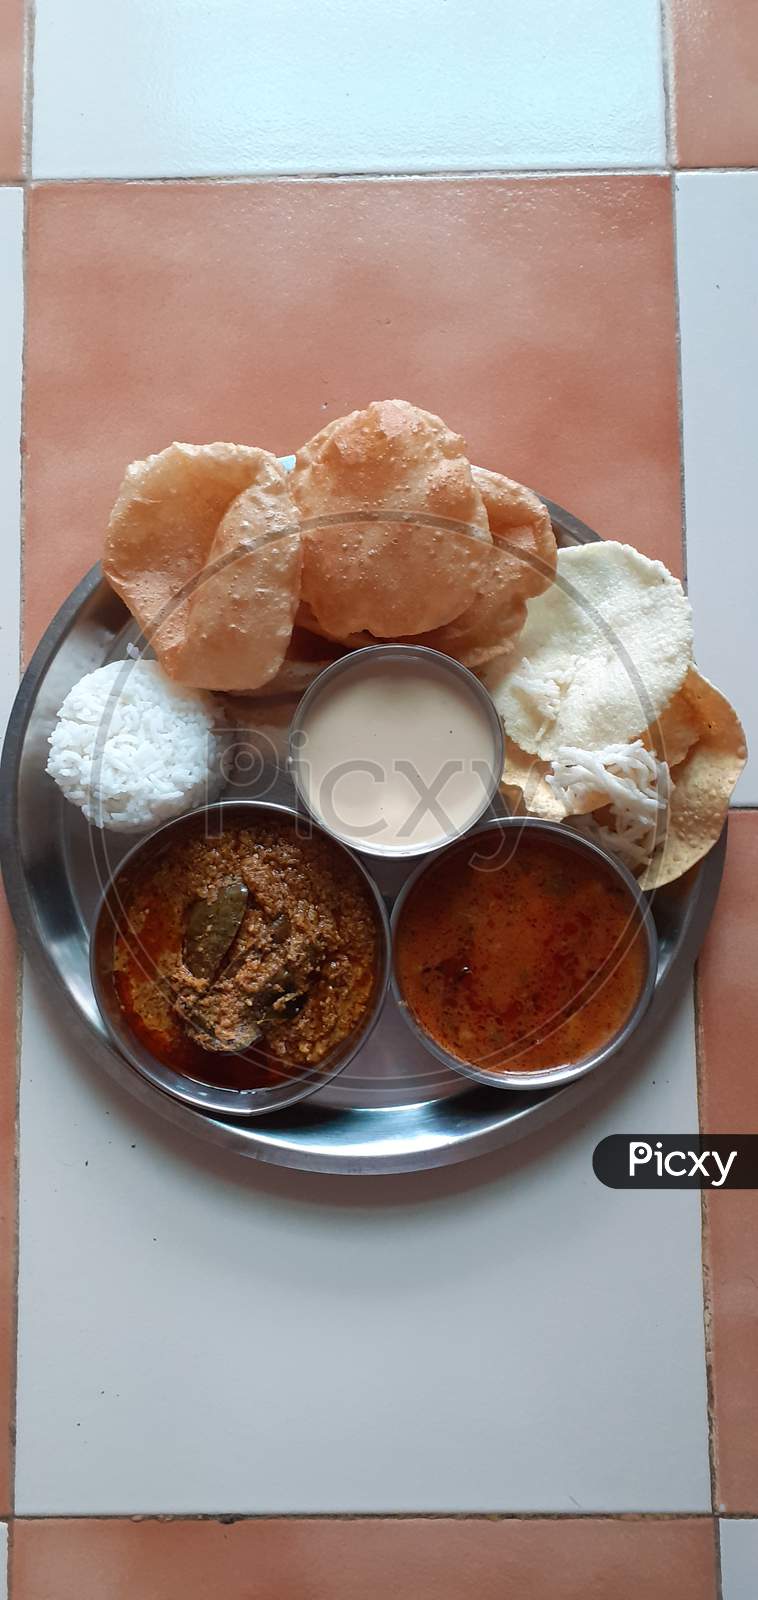 puri bhaji its a maharashrian meal plate